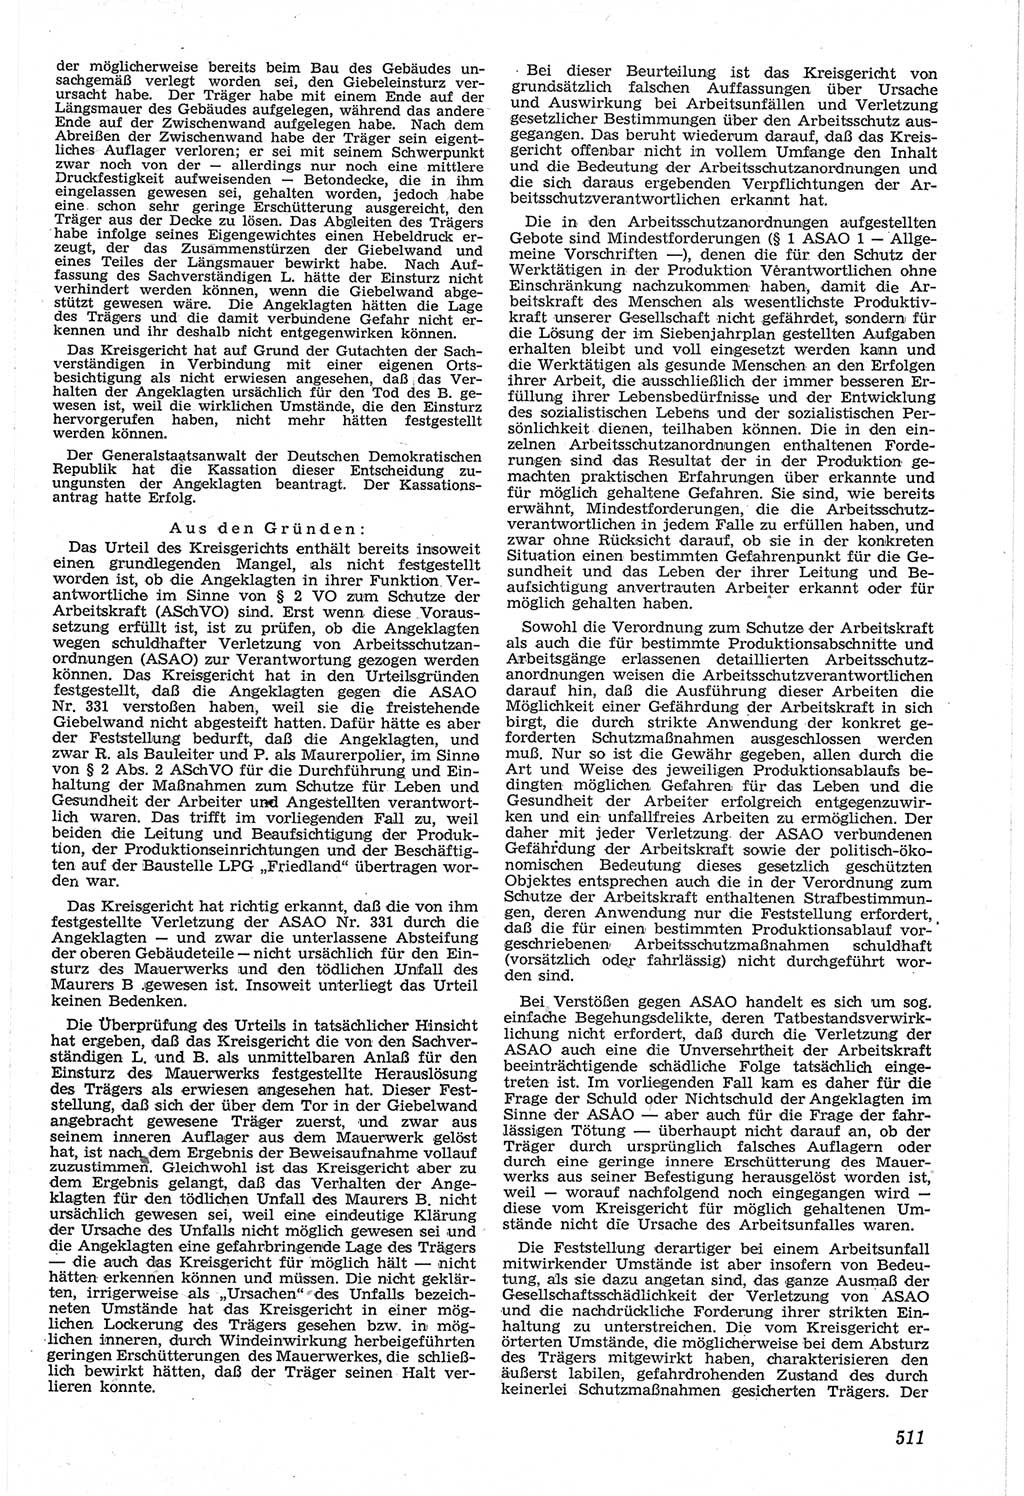 Neue Justiz (NJ), Zeitschrift für Recht und Rechtswissenschaft [Deutsche Demokratische Republik (DDR)], 14. Jahrgang 1960, Seite 511 (NJ DDR 1960, S. 511)